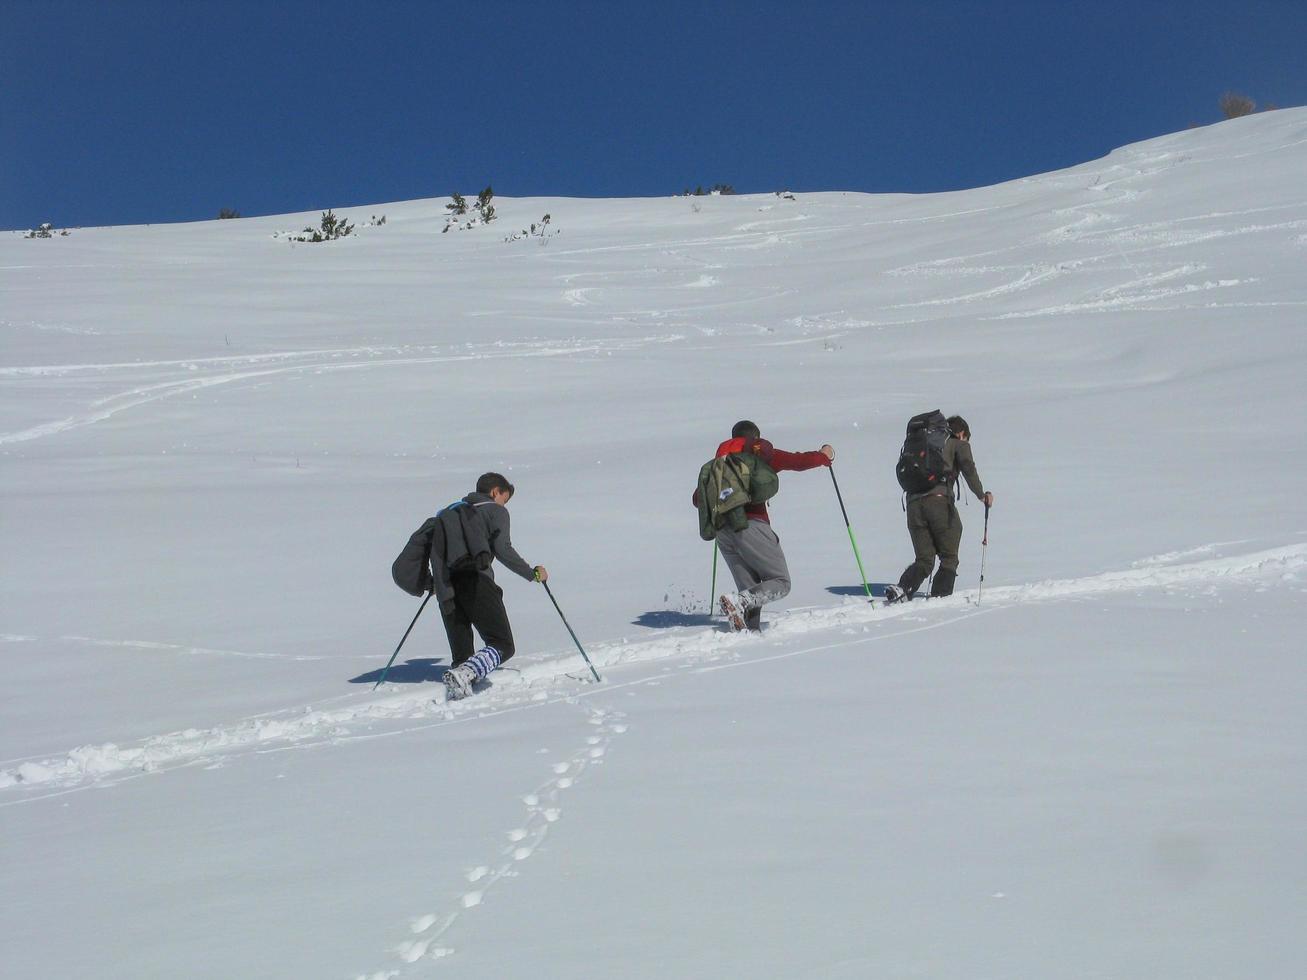 bergamo italia 23 de febrero de 2021 excursionistas escalando la montaña en la nieve foto